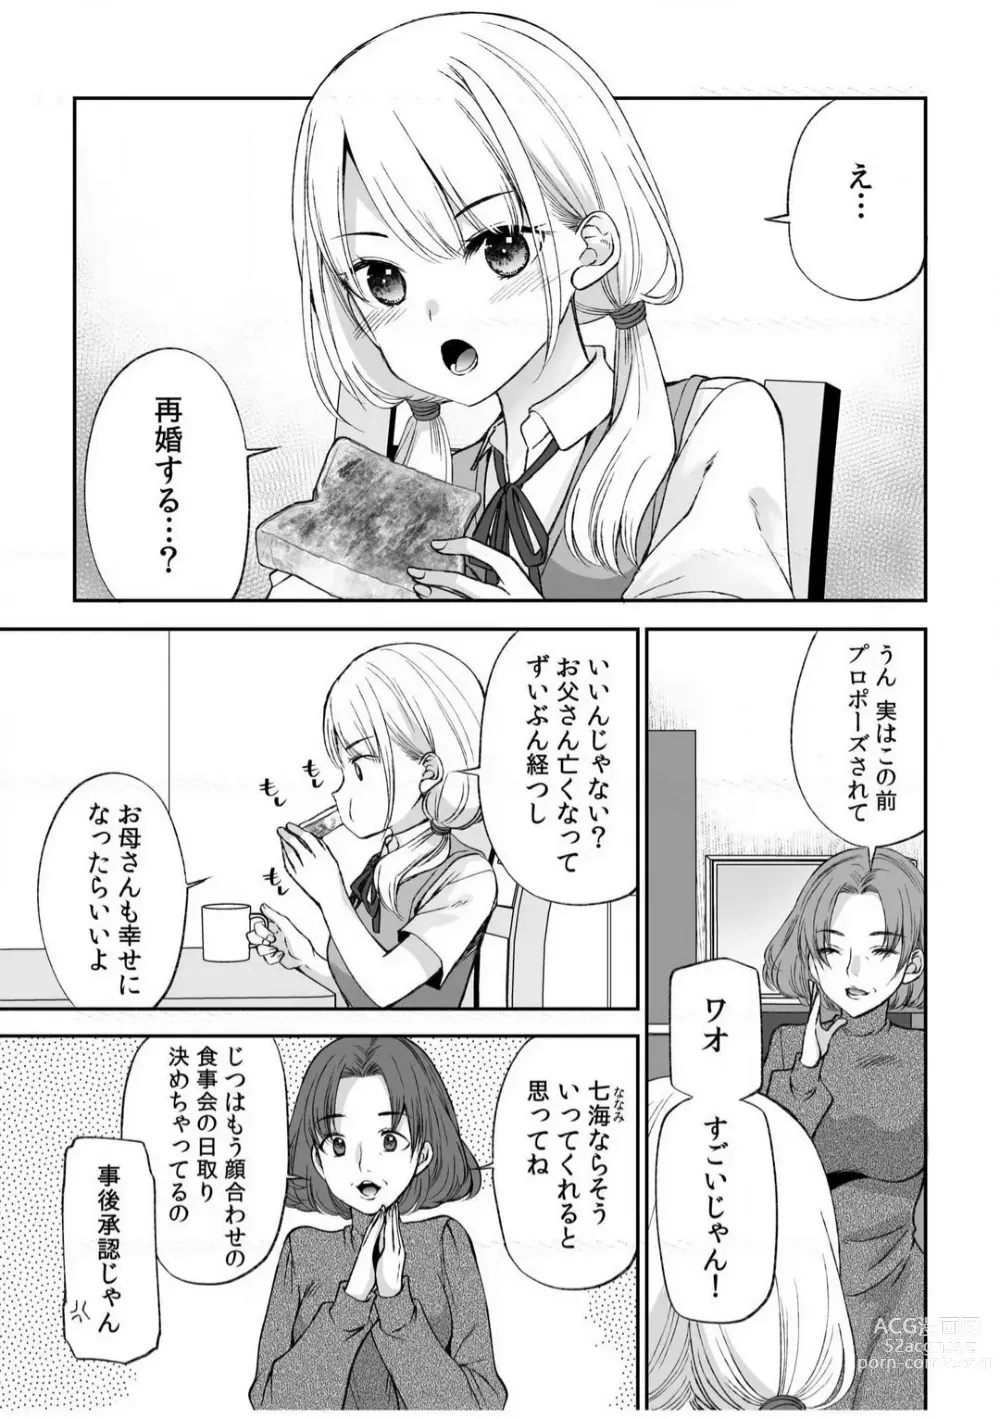 Page 2 of manga Yada... Naka Ippai Shinaide...